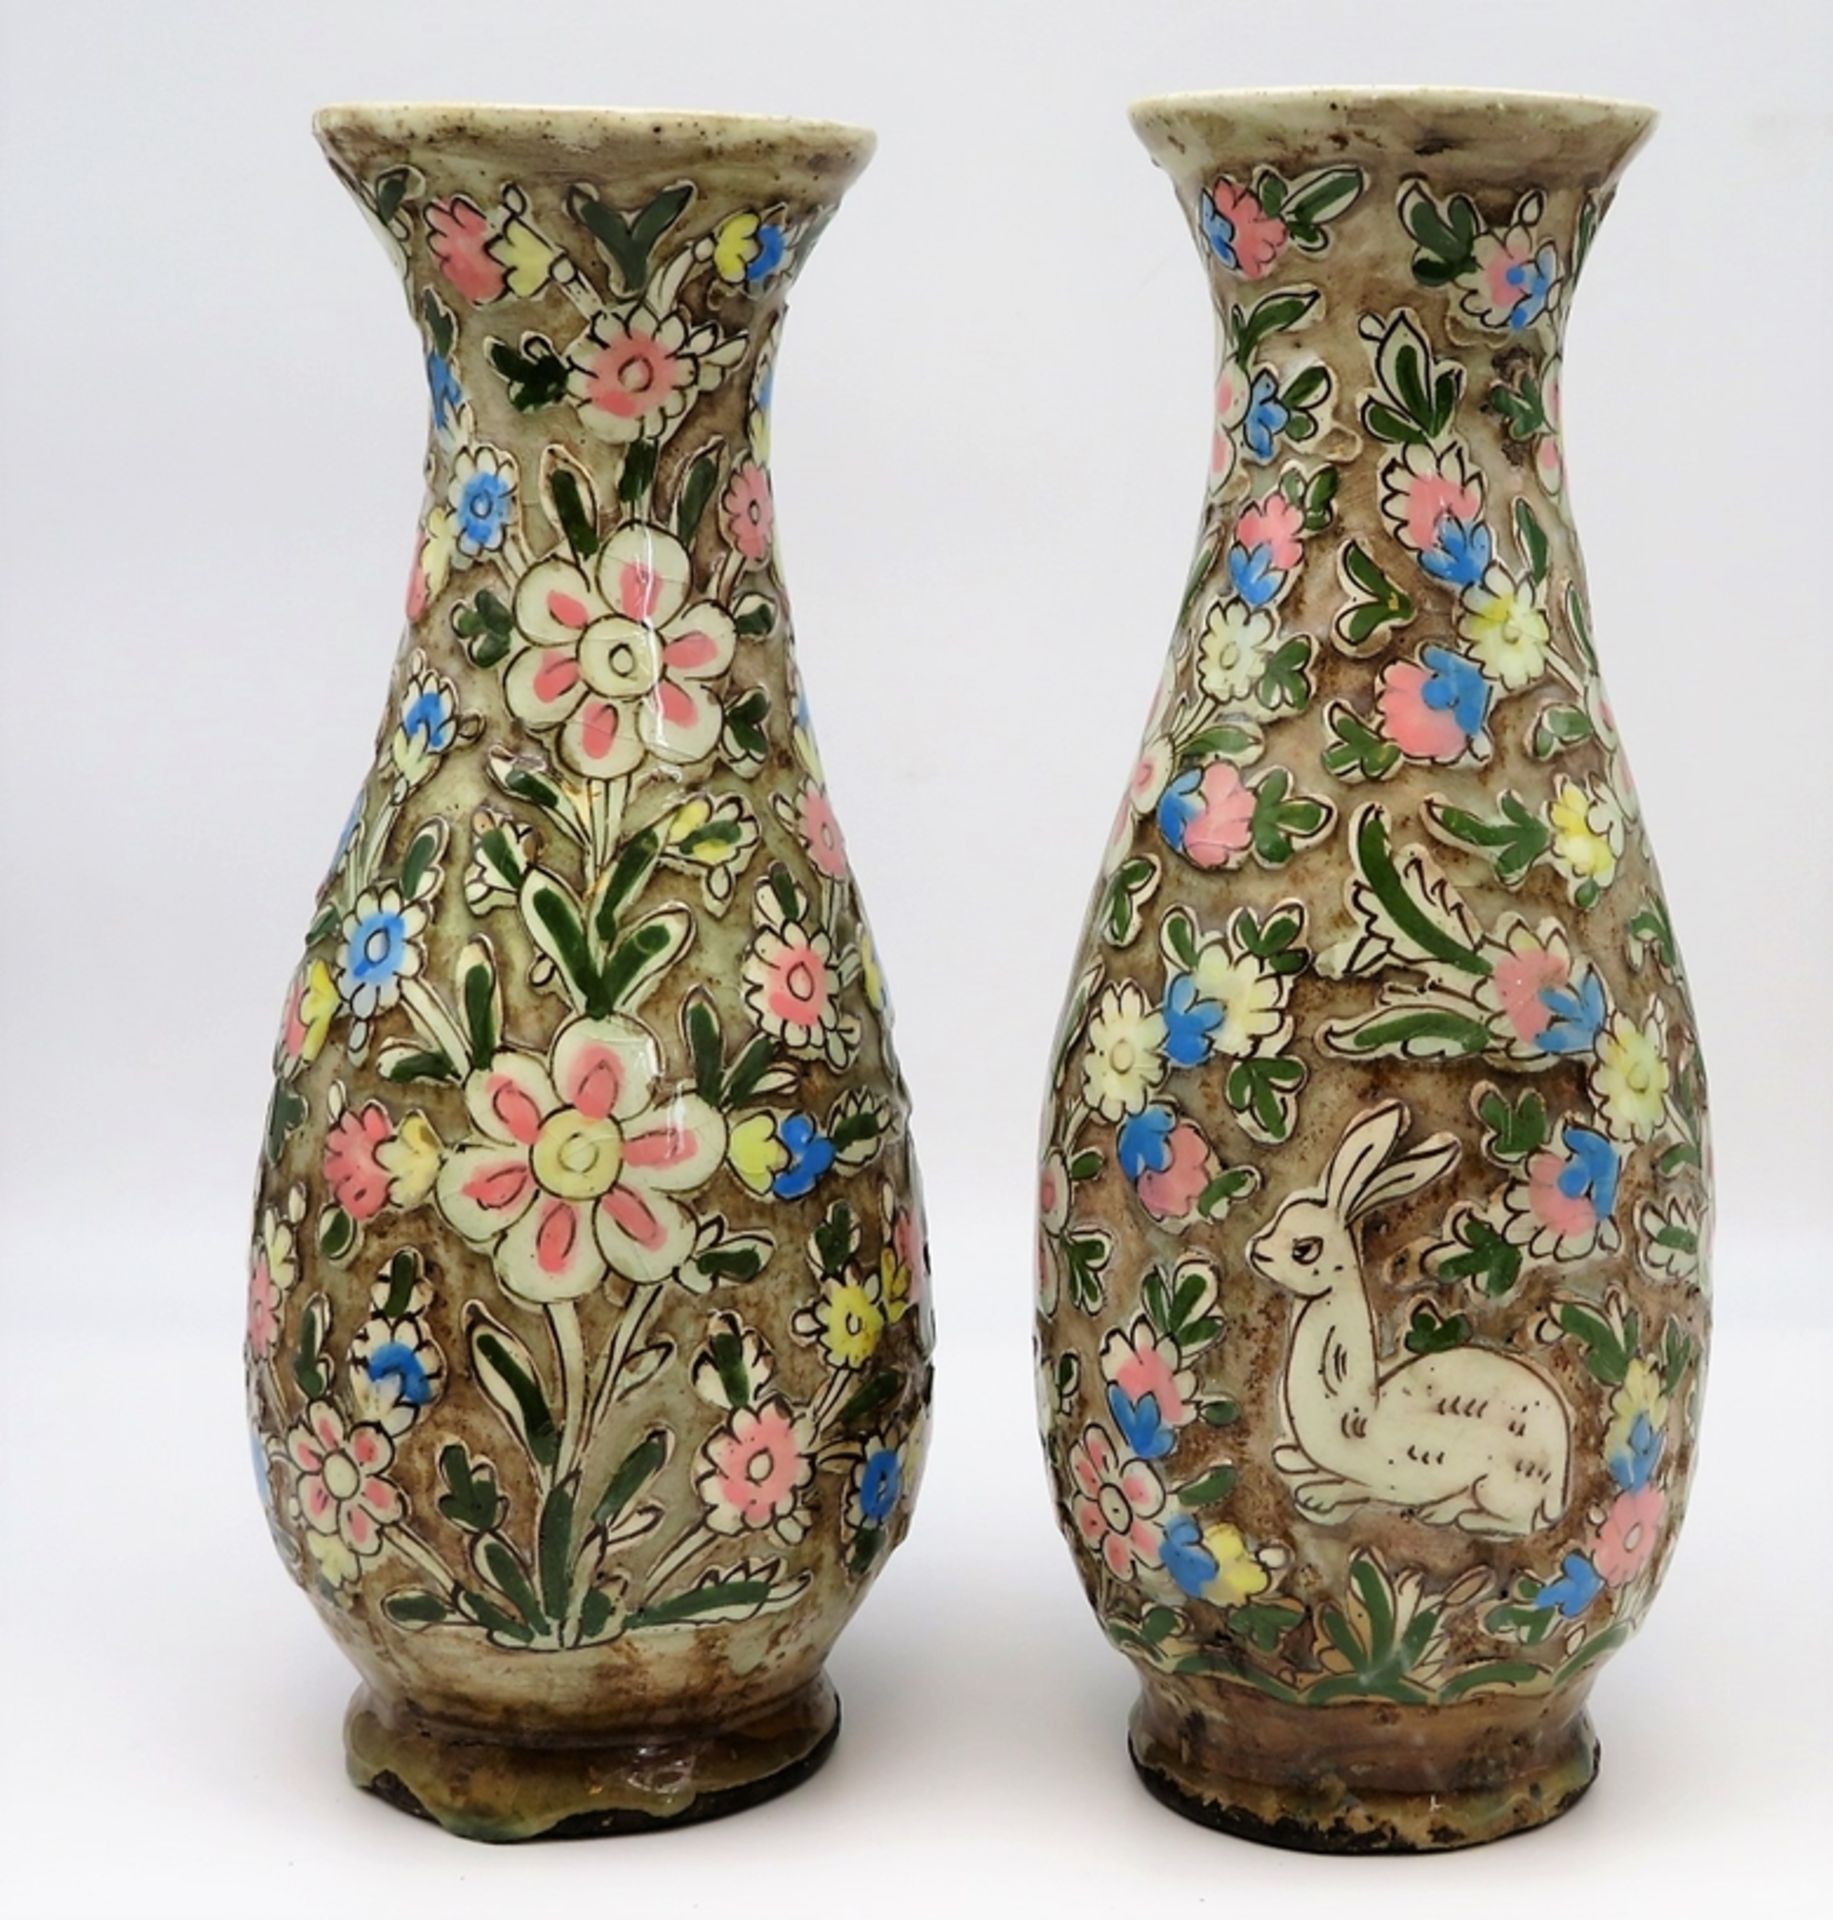 2 Vasen, Persien, antik, Fayence mit Reliefdekor von Blüten und Hasen, polychrom glasiert, 1 x am H